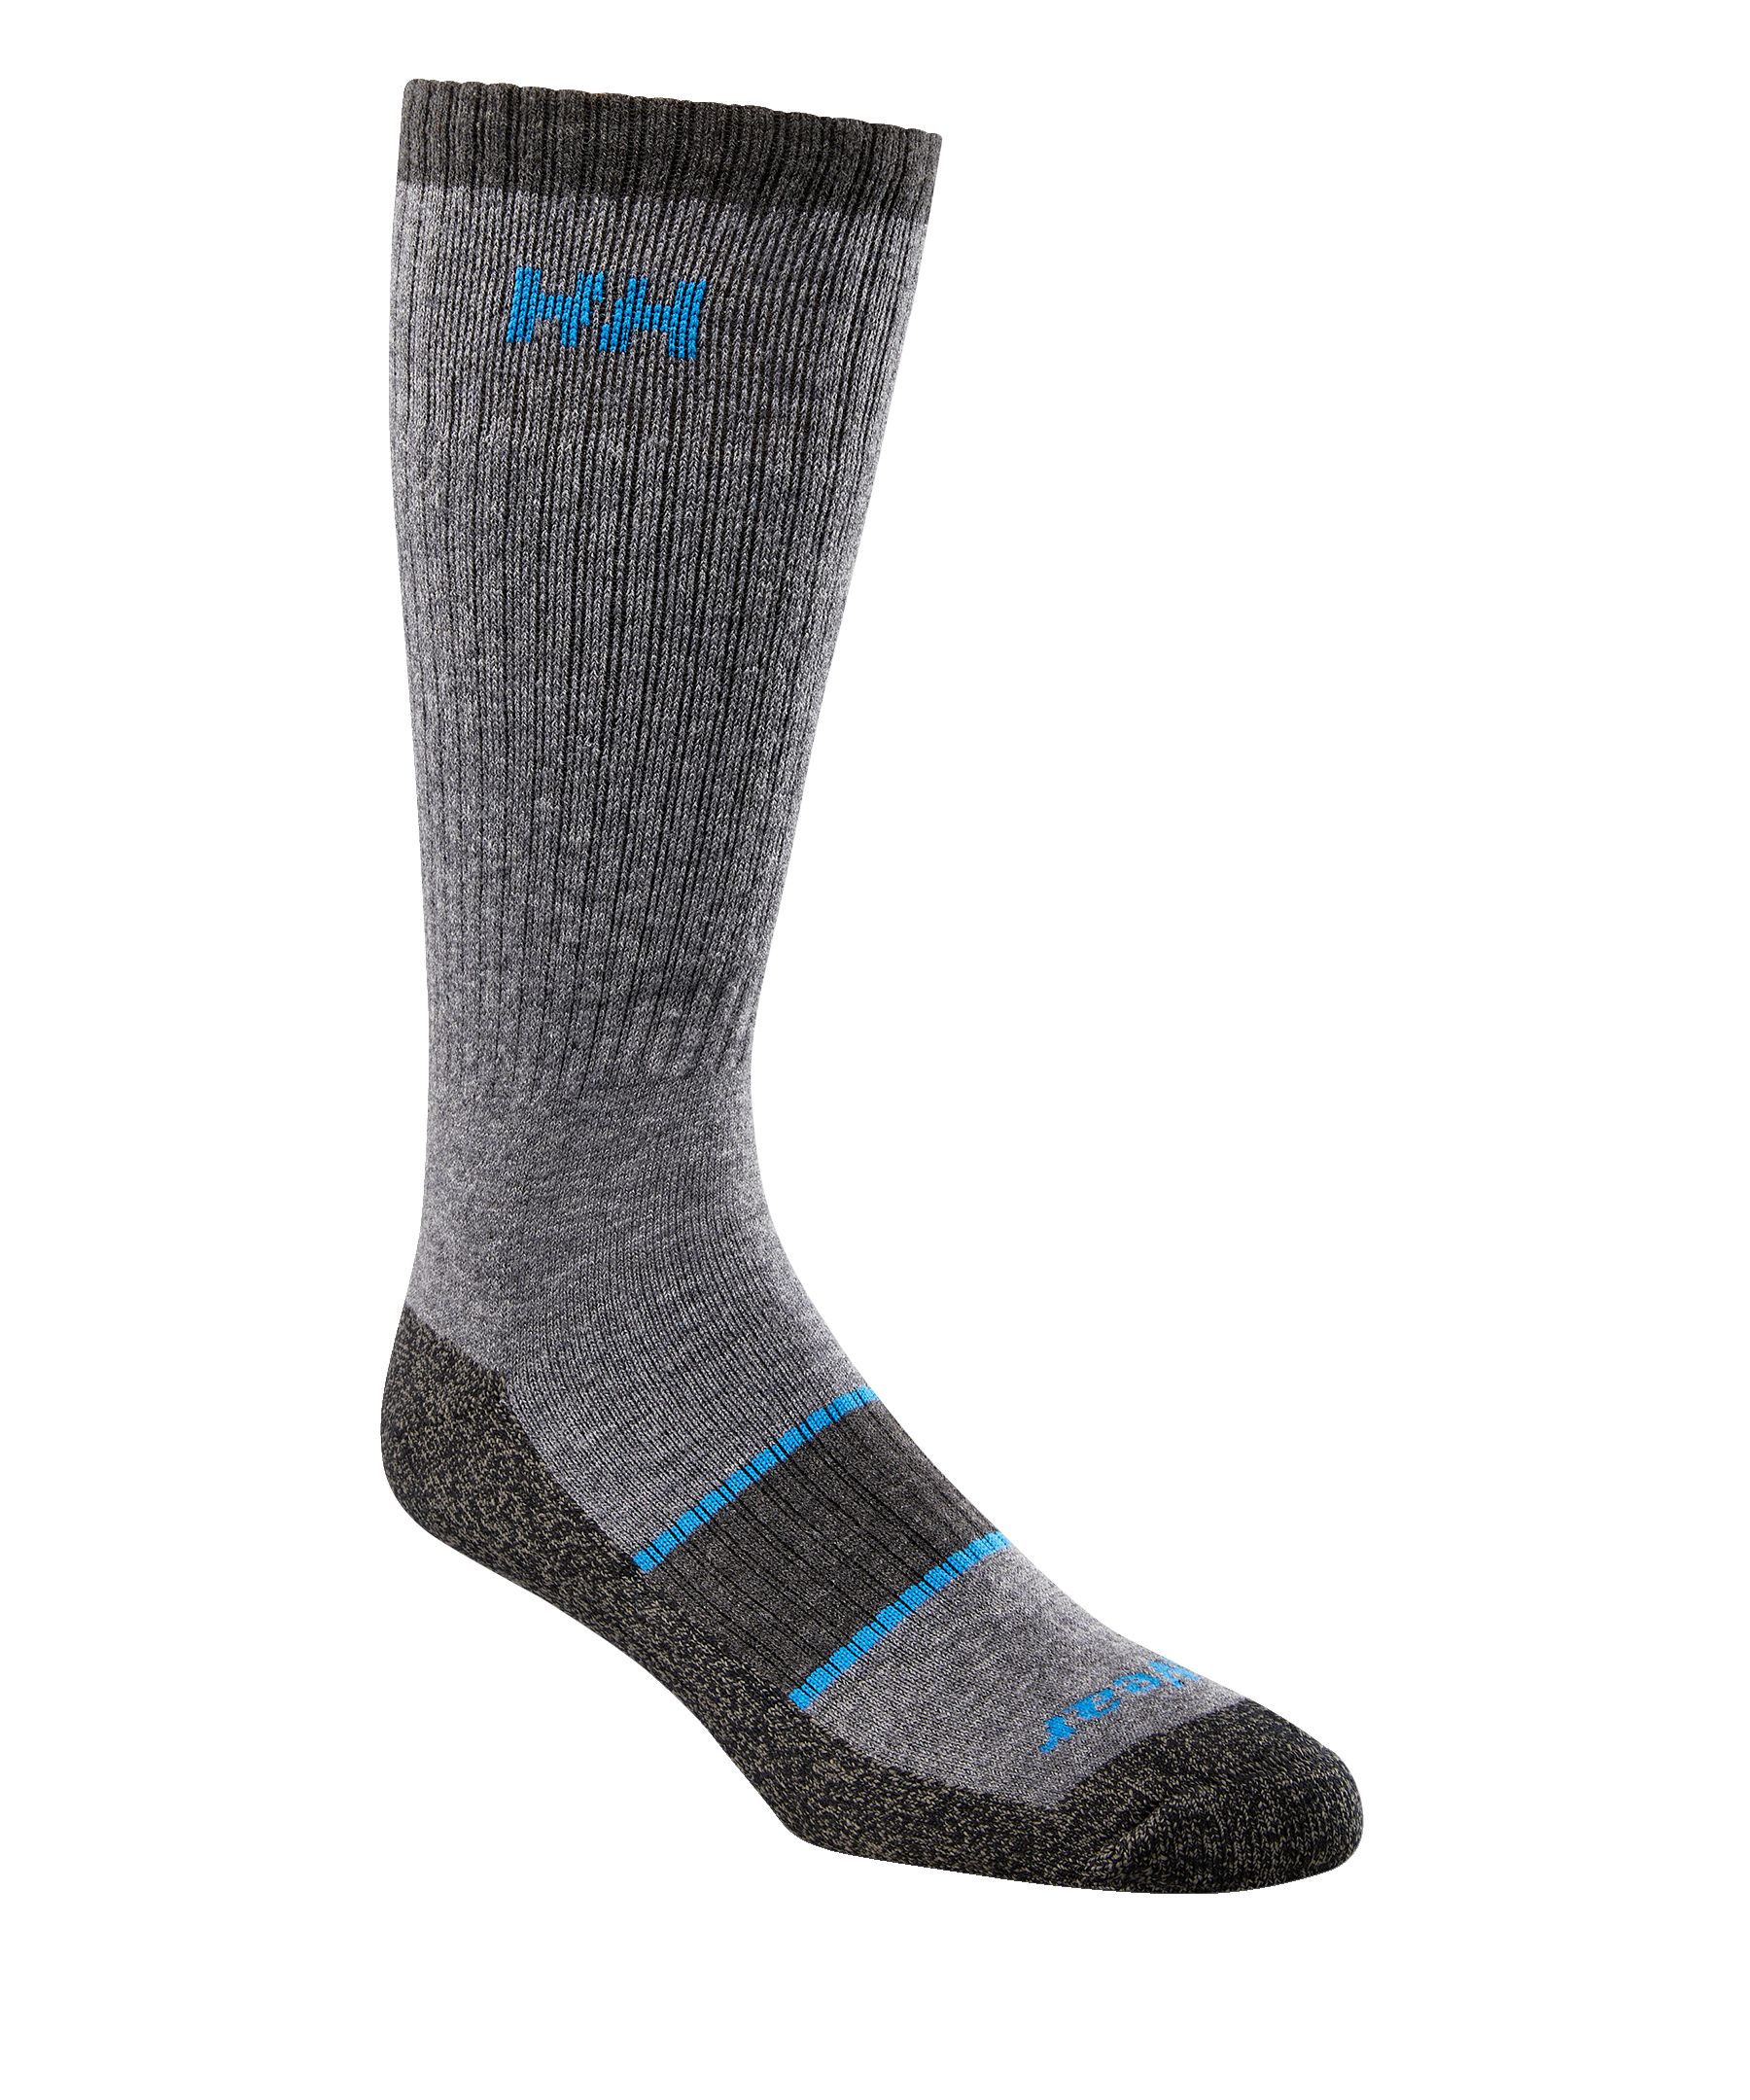 Helly Hansen Workwear Men's driWear Merino Blend Steel Toe Work Socks ...